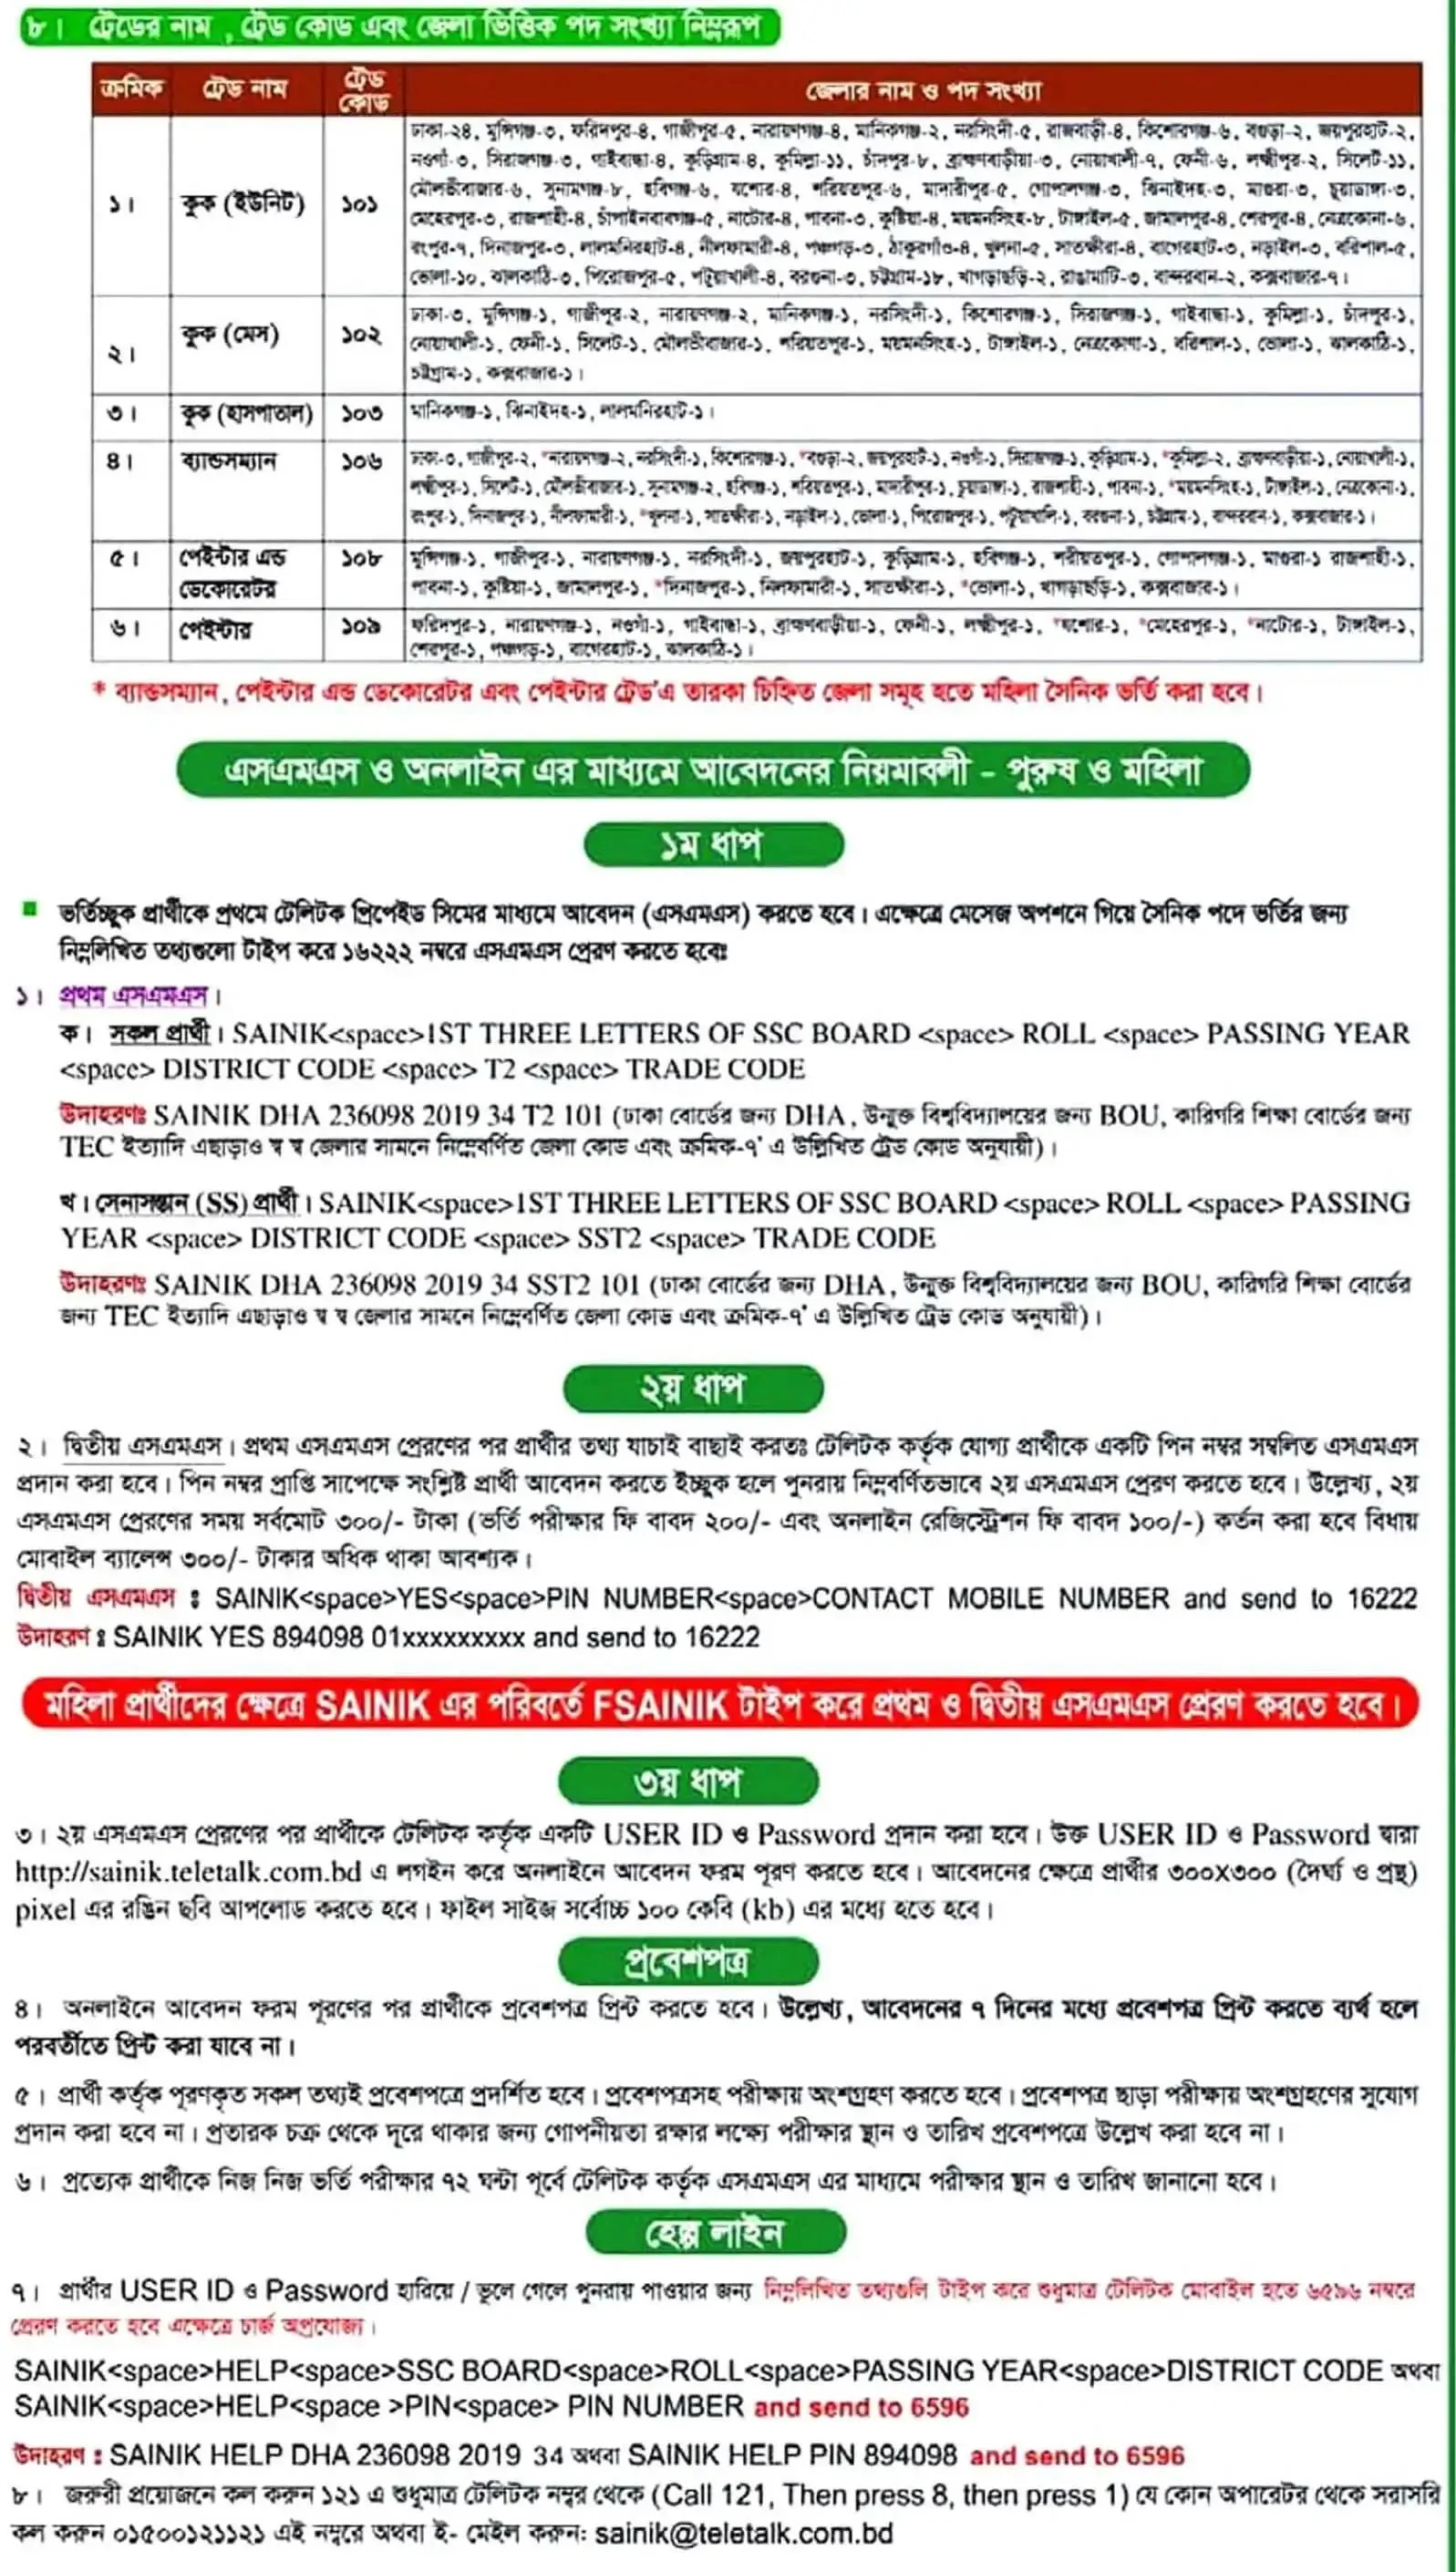 বাংলাদেশ সেনাবাহিনীতে সৈনিক পদে (ট্রেড -০২) নিয়োগ বিজ্ঞপ্তি ২০২৪ - Bangladesh Army Soldier Job Circular 2024